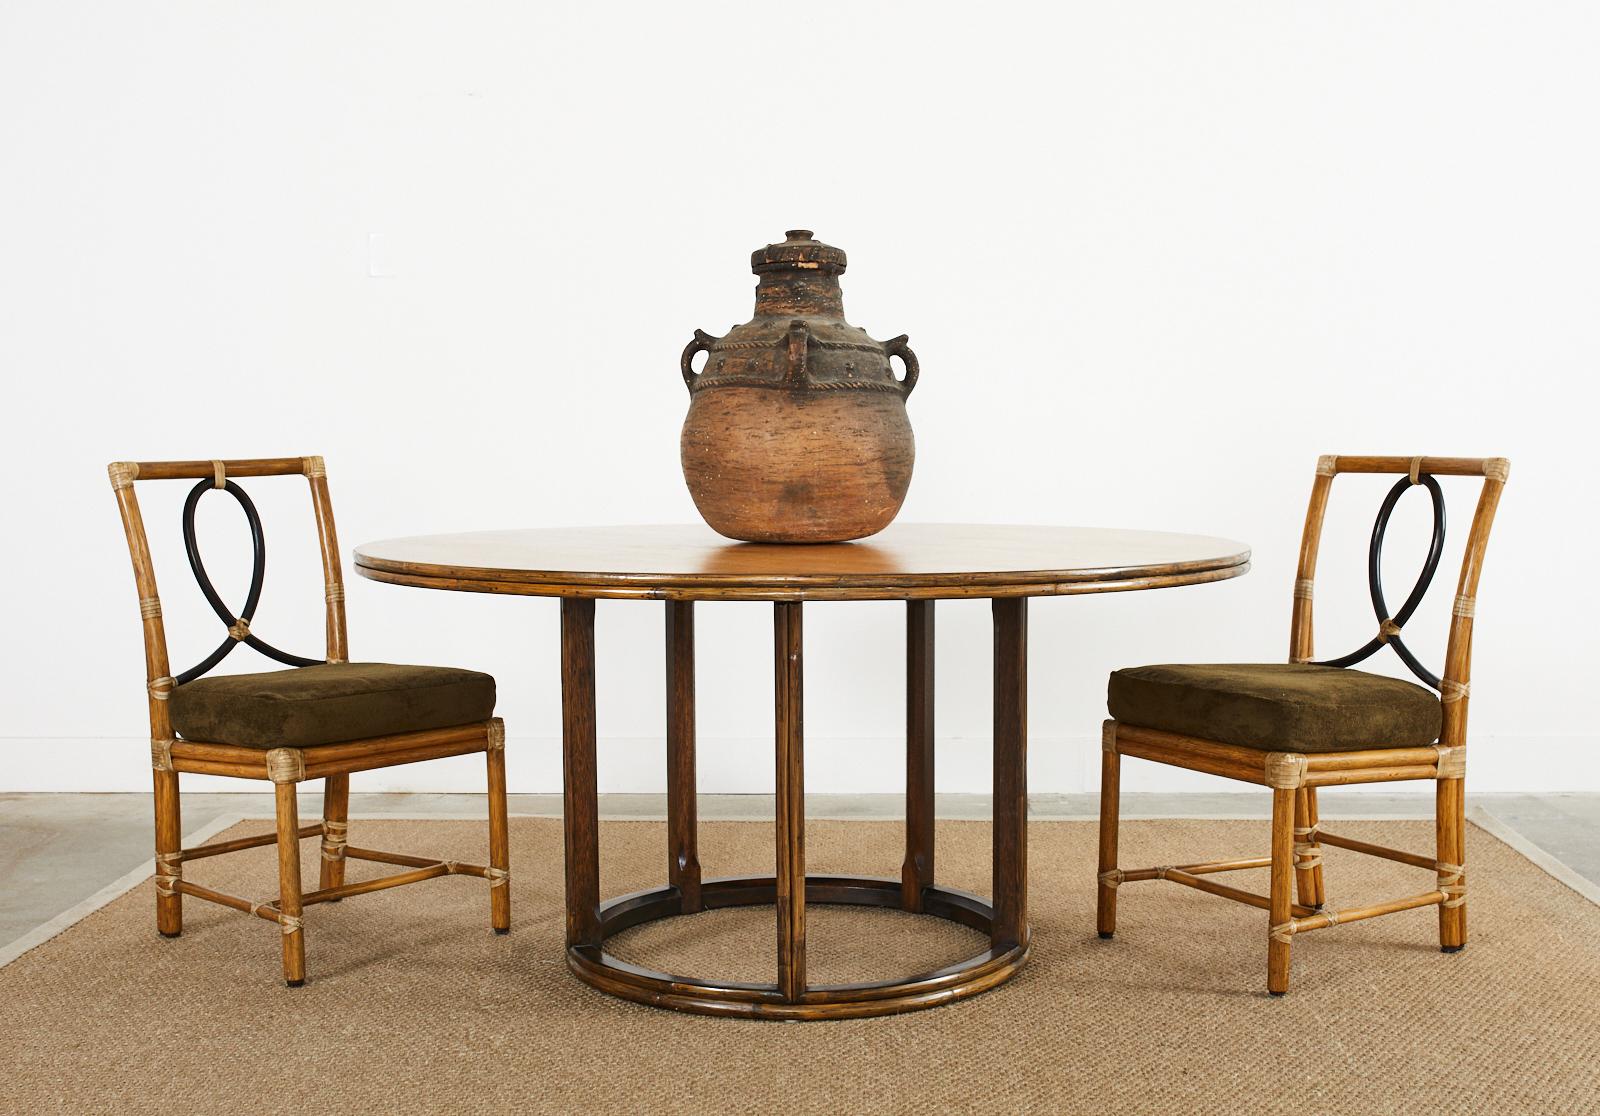 Grand McGuire ist ein moderner, runder Esstisch aus Eichenholz mit einer Oberfläche aus geriffeltem Rattan. Der große Tisch hat einen Sockel aus Eichenholz, der aus zwei Eichenholzkreisen besteht, die durch fünf Eichenholzbeine miteinander verbunden